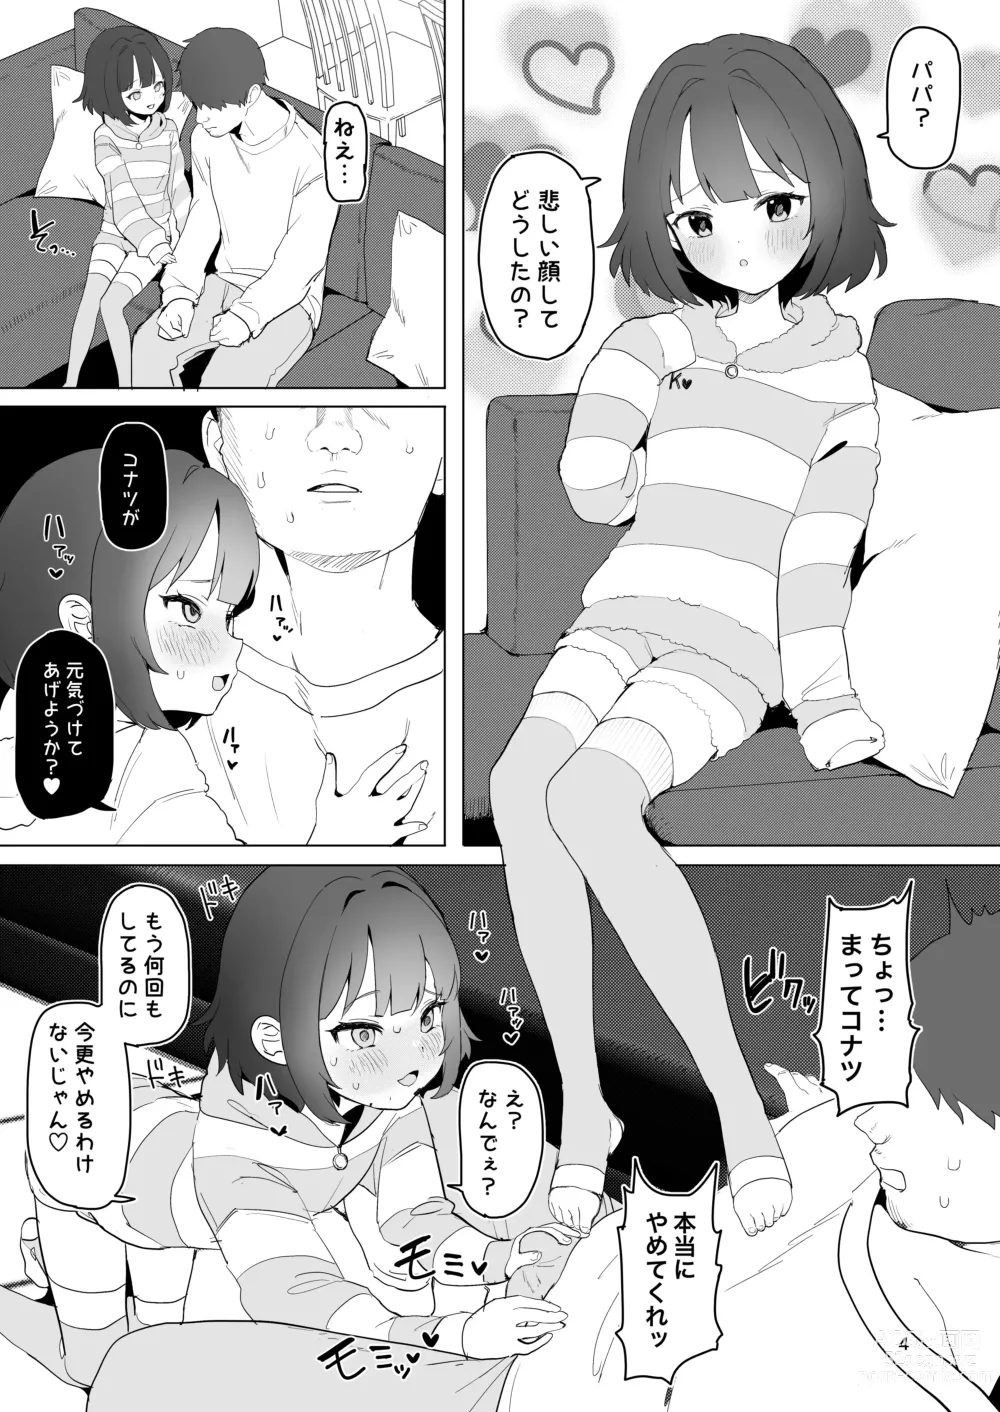 Page 3 of doujinshi Hitokuchi Echi Manga 2